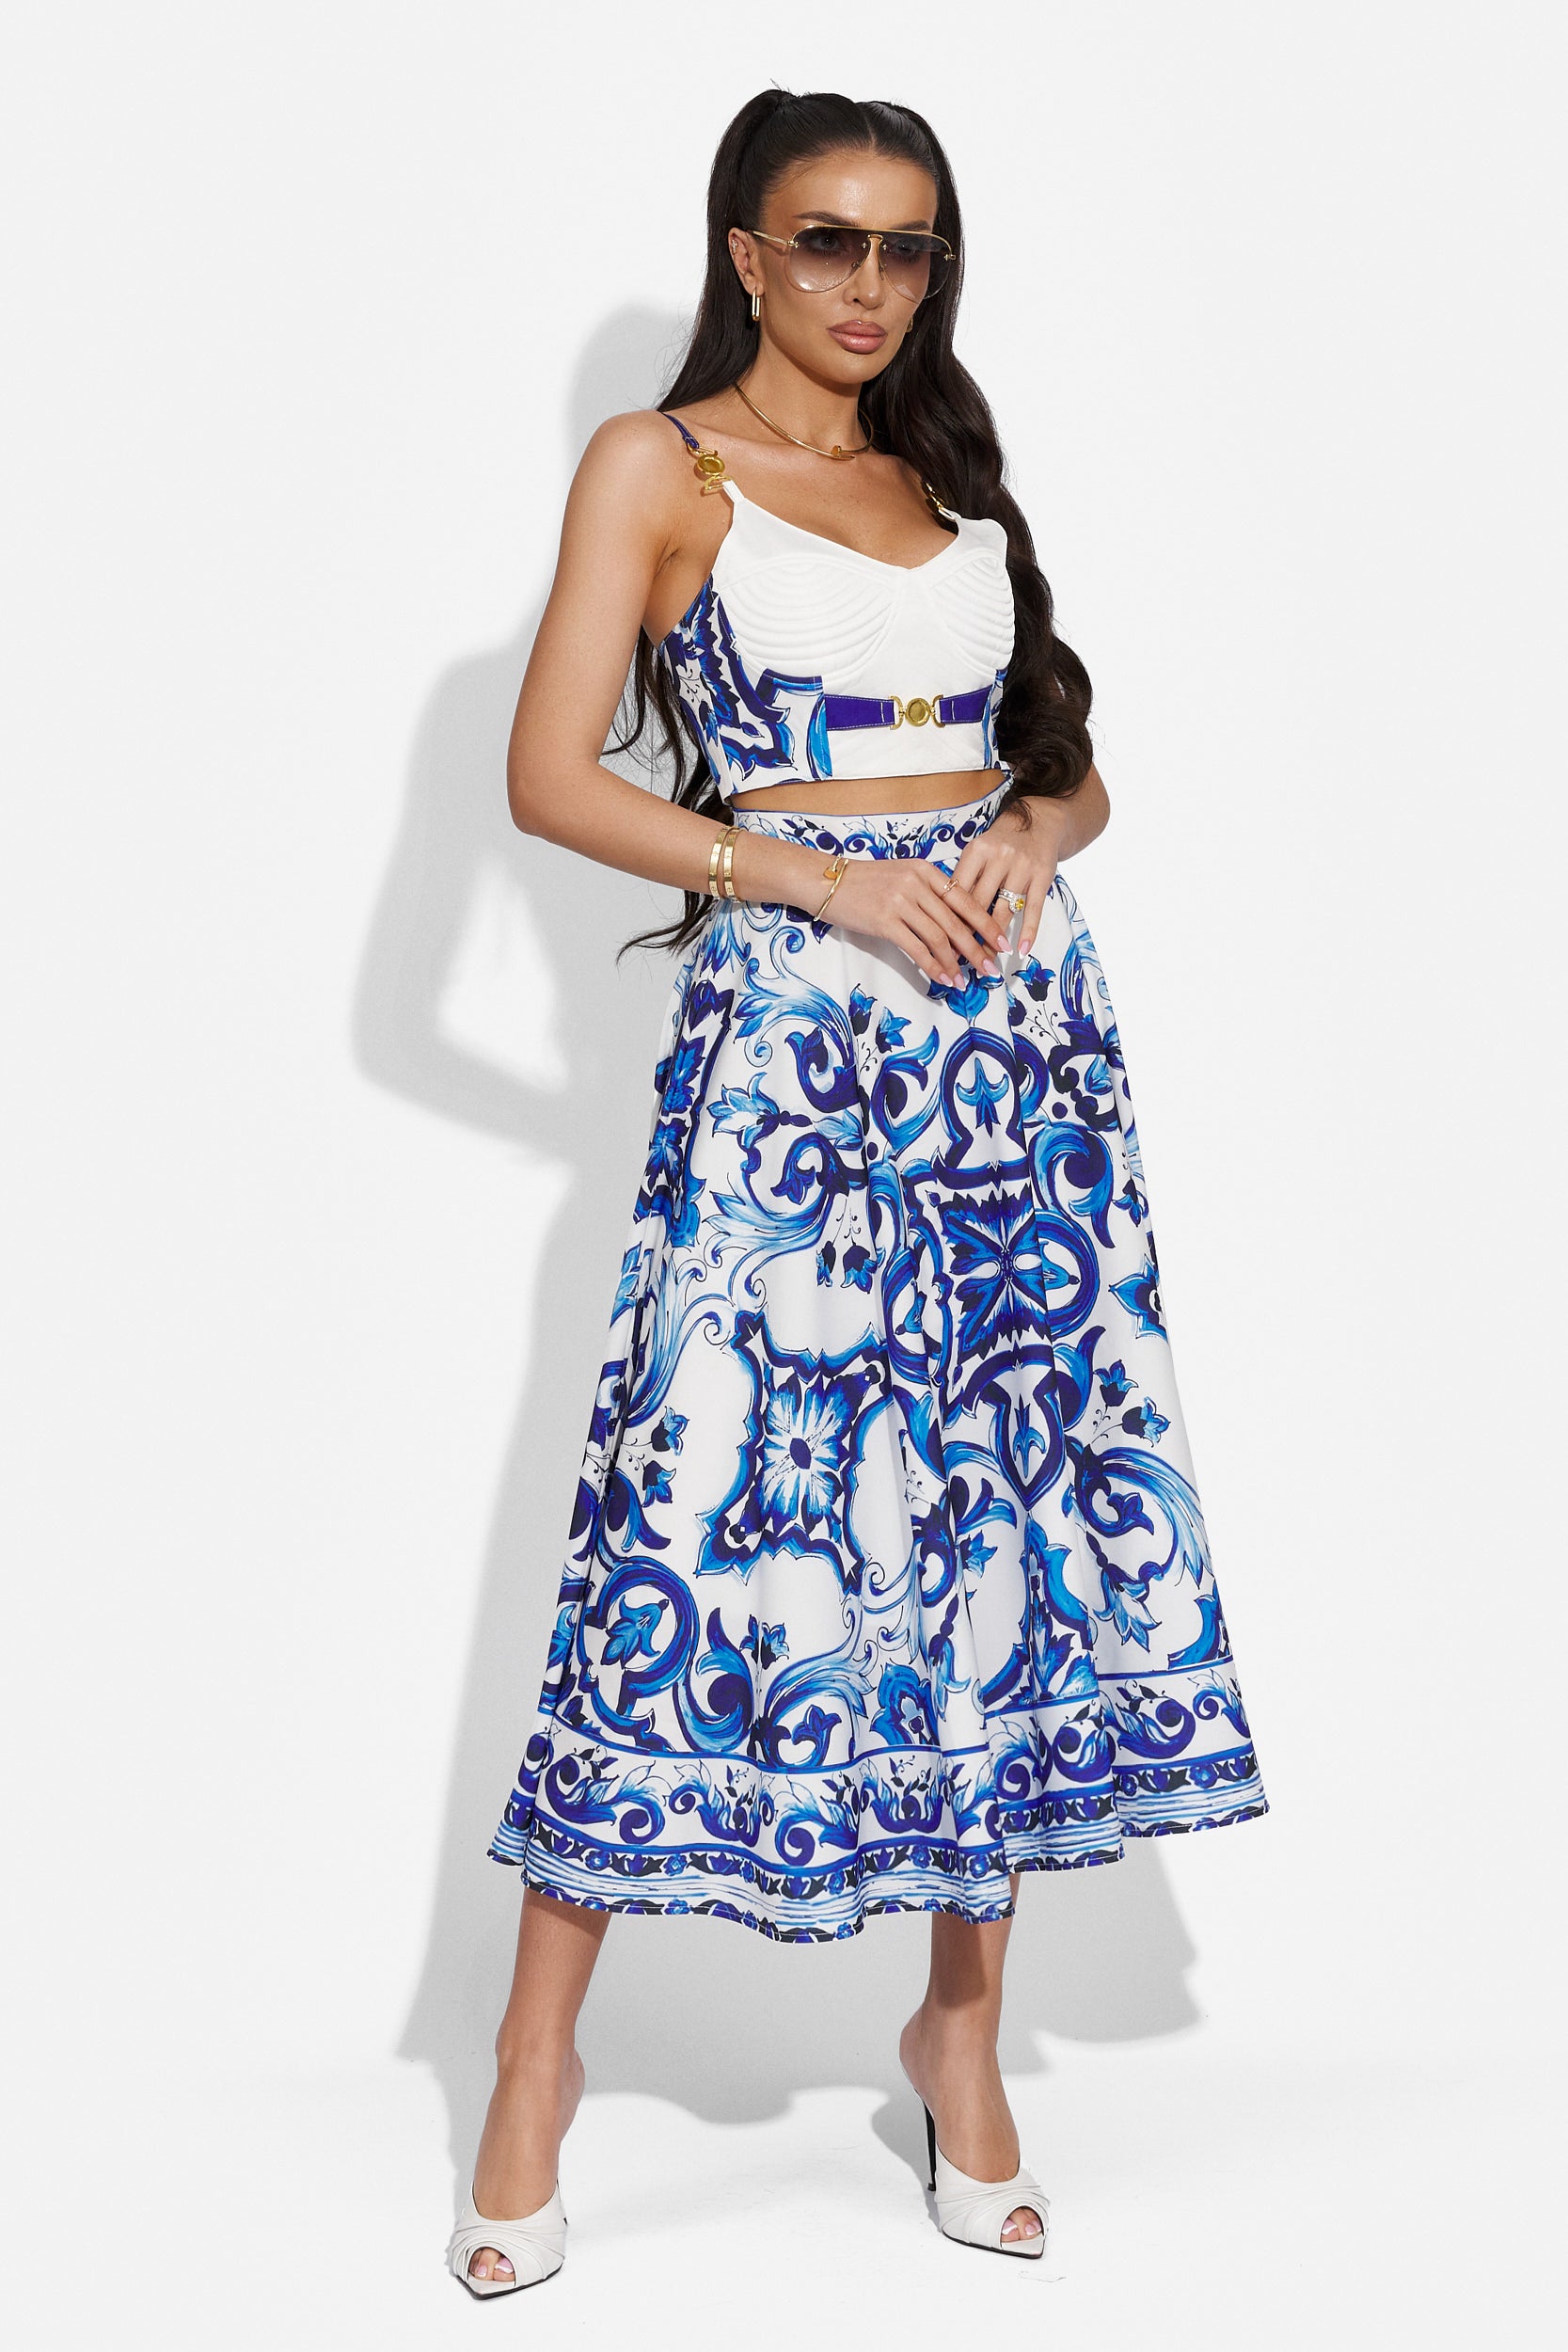 Elegant blue and white ladies skirt suit Moniha Bogas